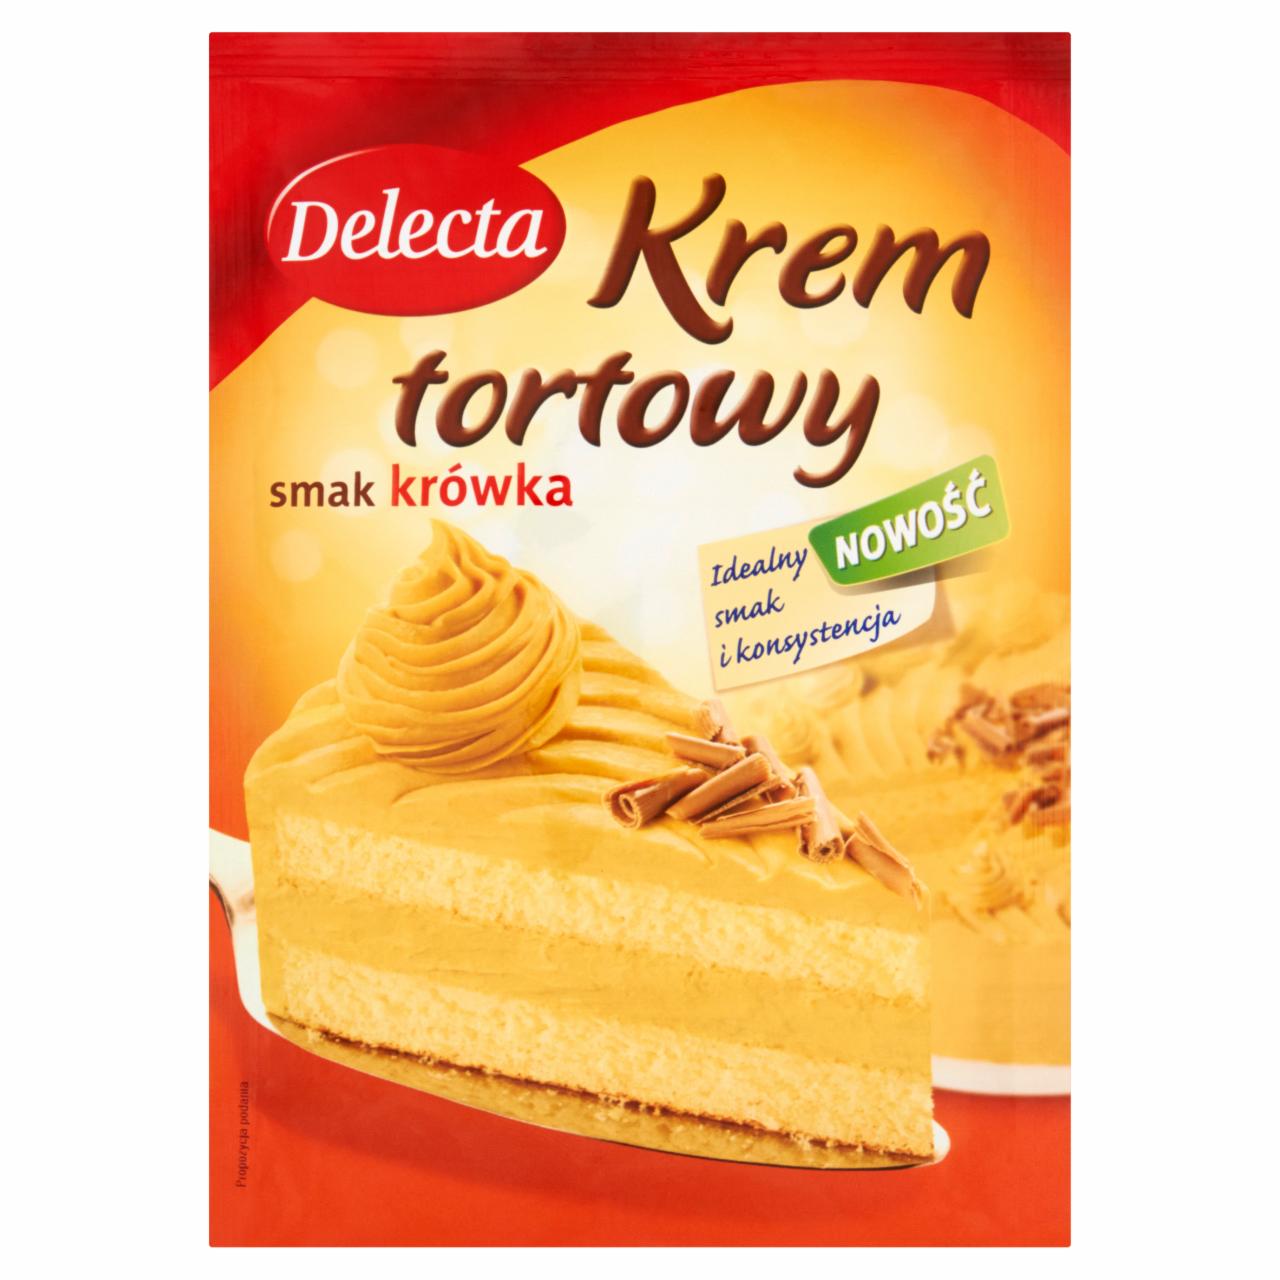 Zdjęcia - Delecta Krem tortowy smak krówka 110 g